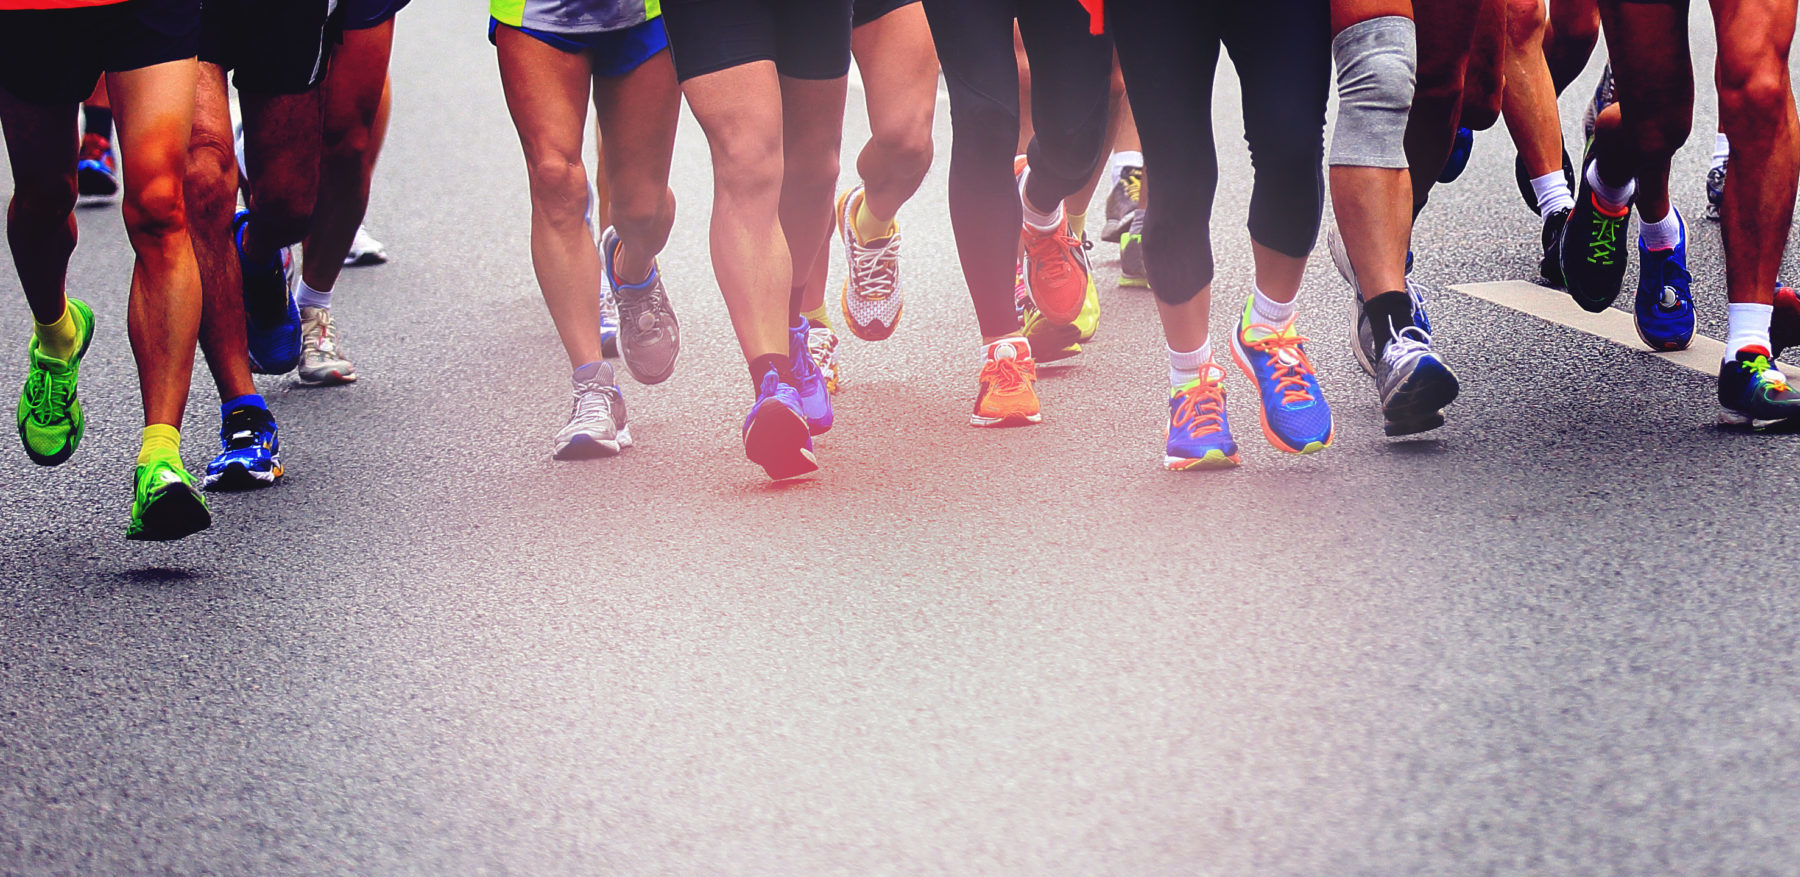 Overtekenen kas motief Wat kun je doen aan een runners knee? - Sport Medisch Centrum Papendal